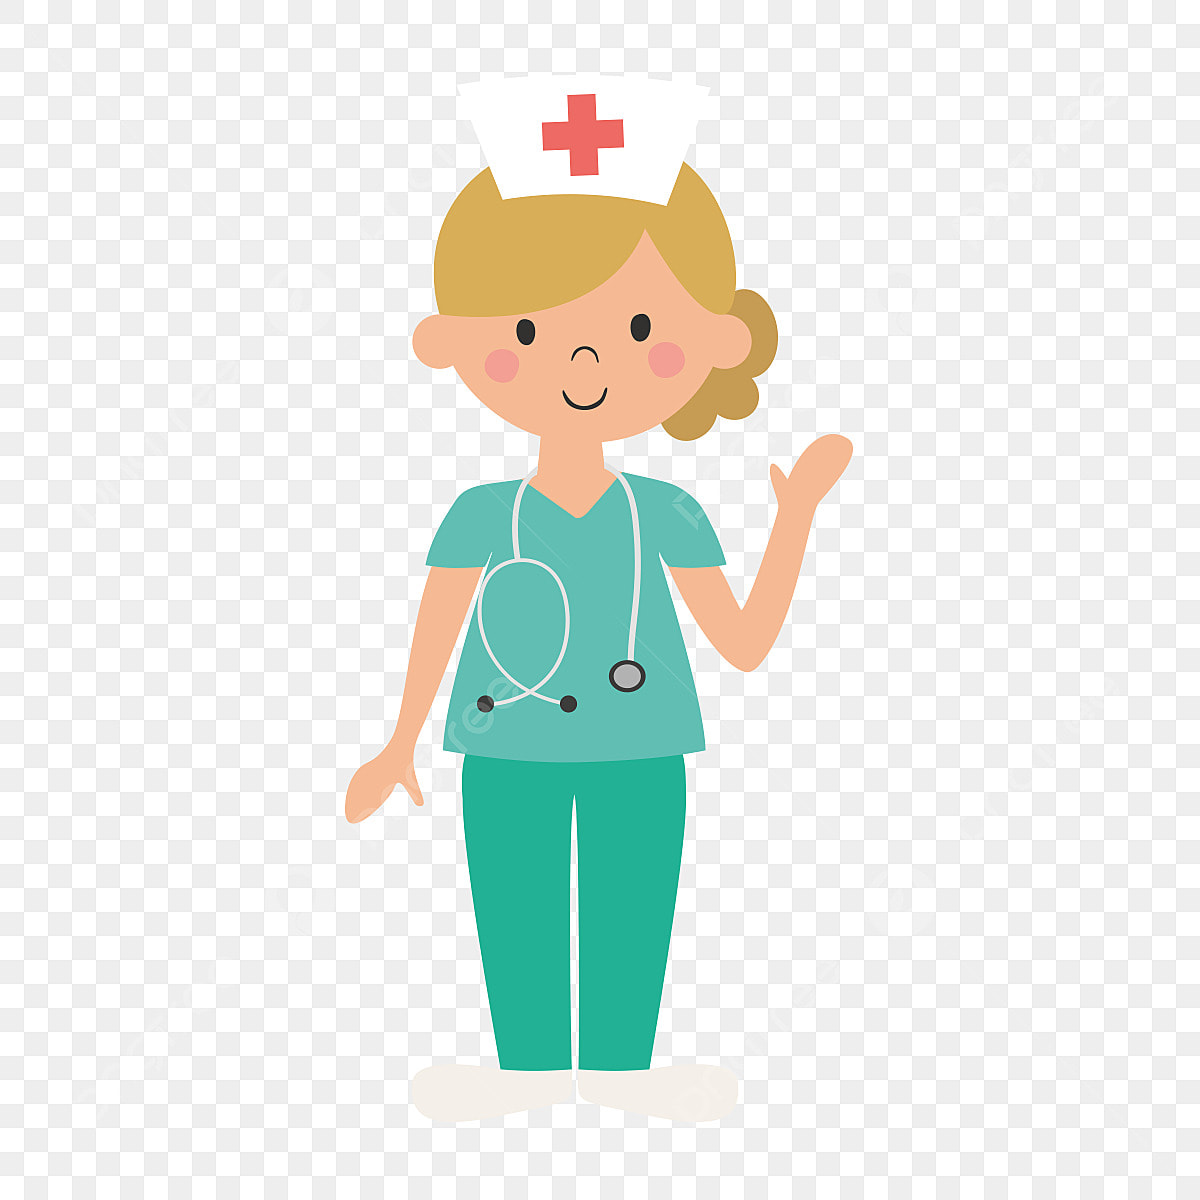 images of nurses cartoon